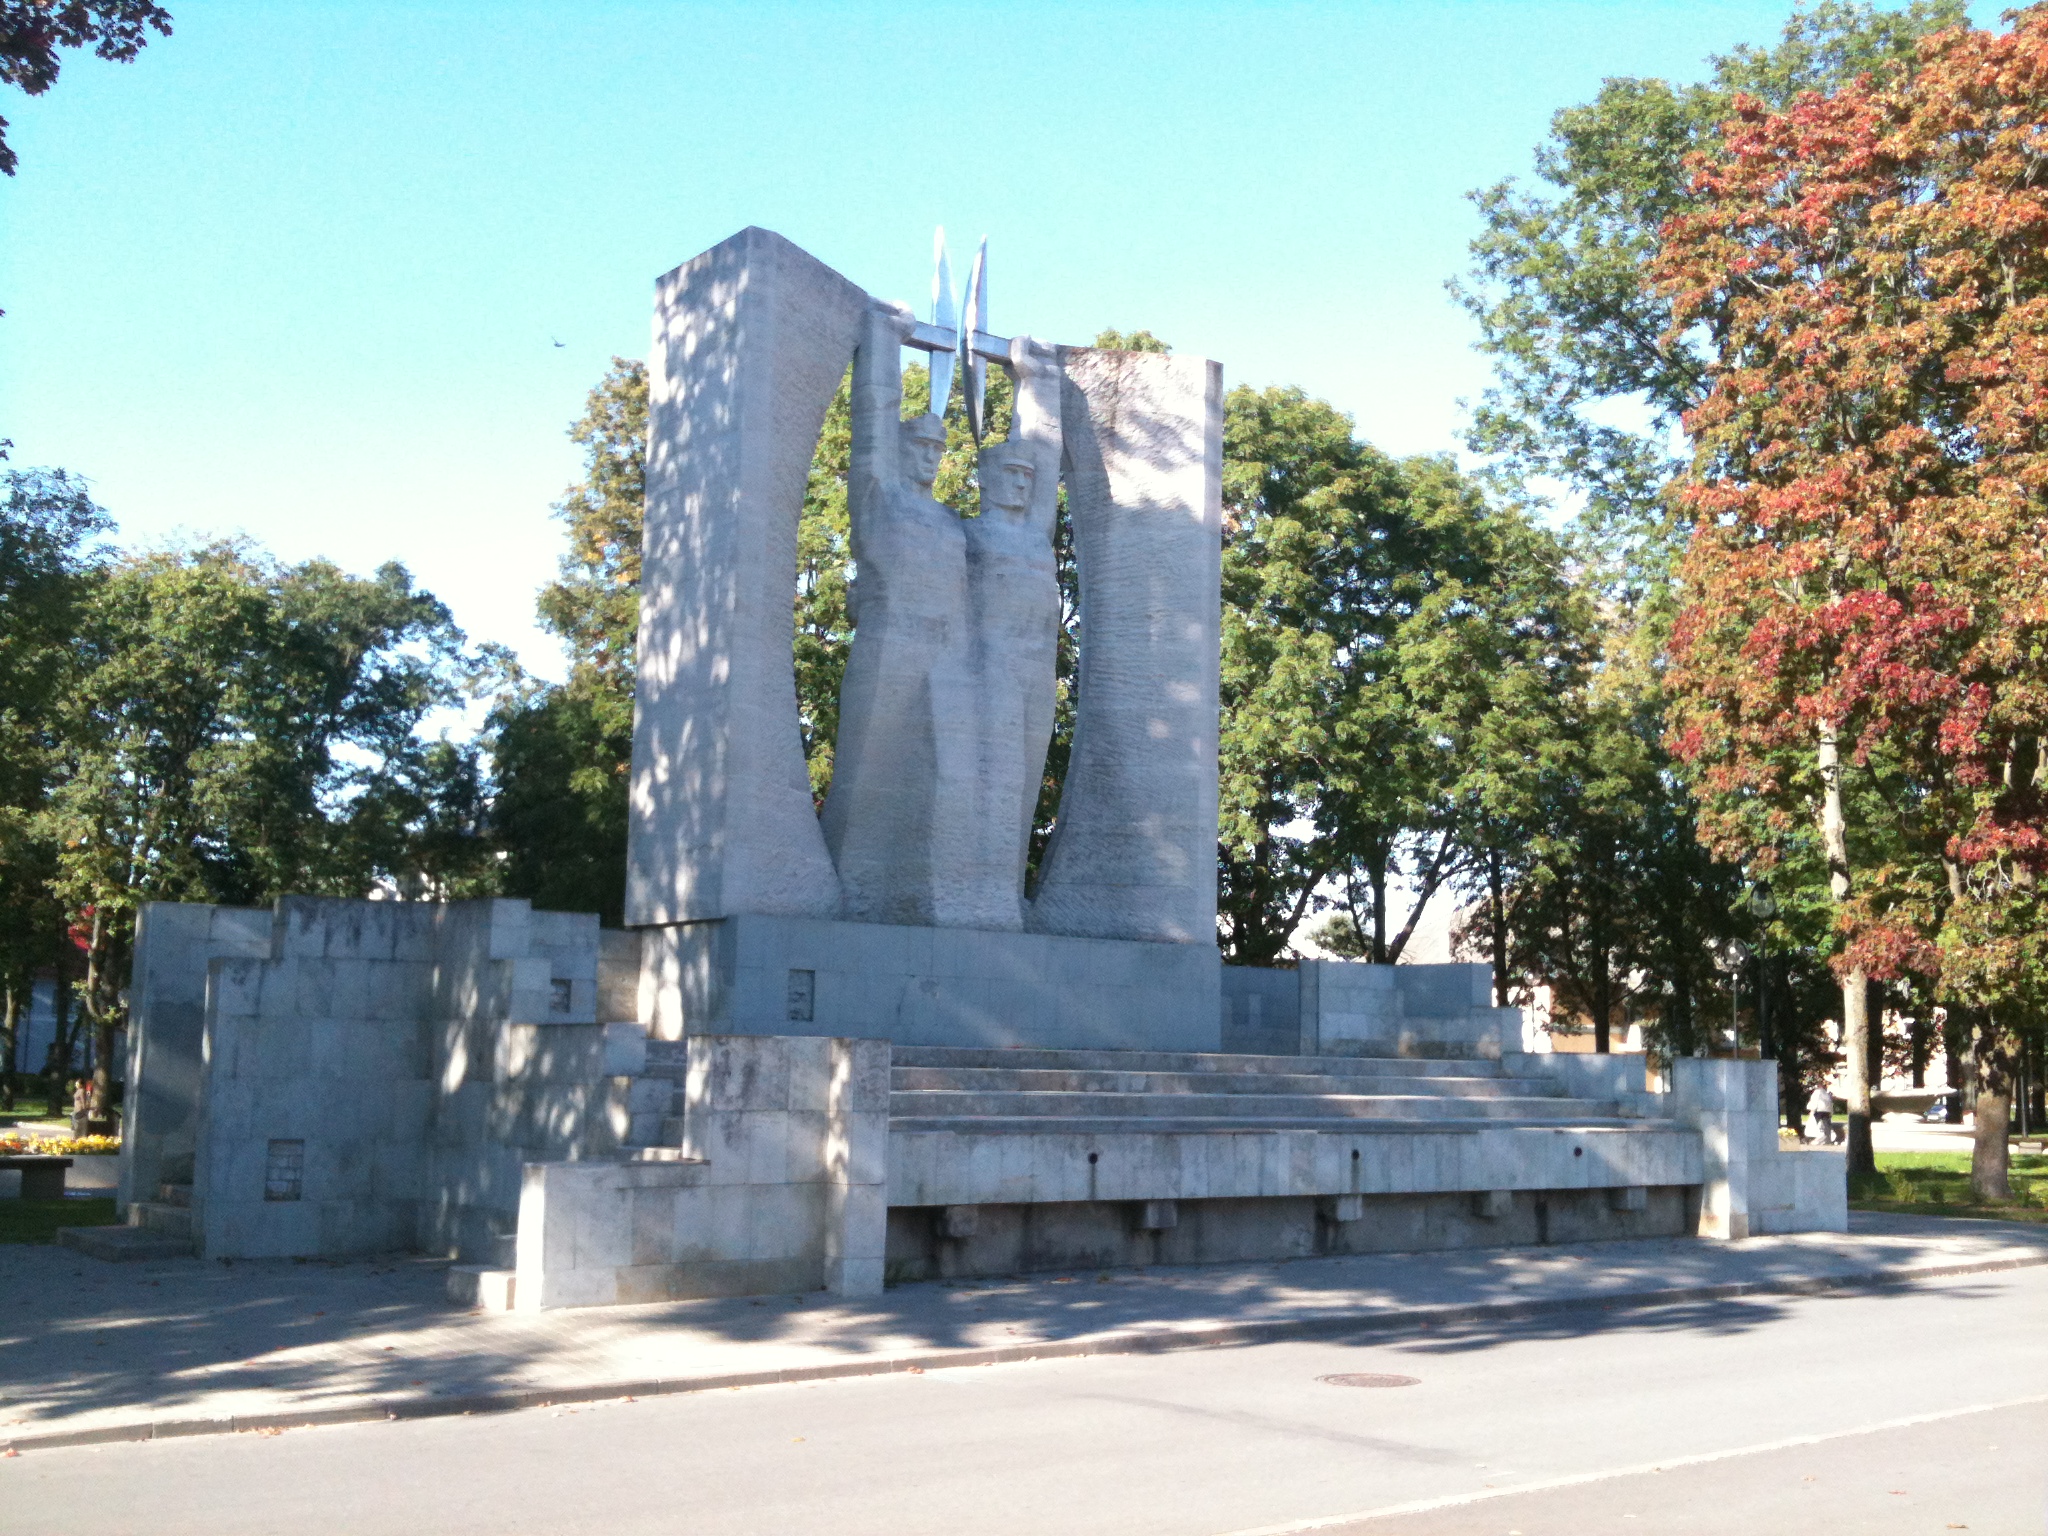 Kohtla-jarve, a monument to two non-drinkers - Monument "Au tööle", püstitatud 1967. aastal